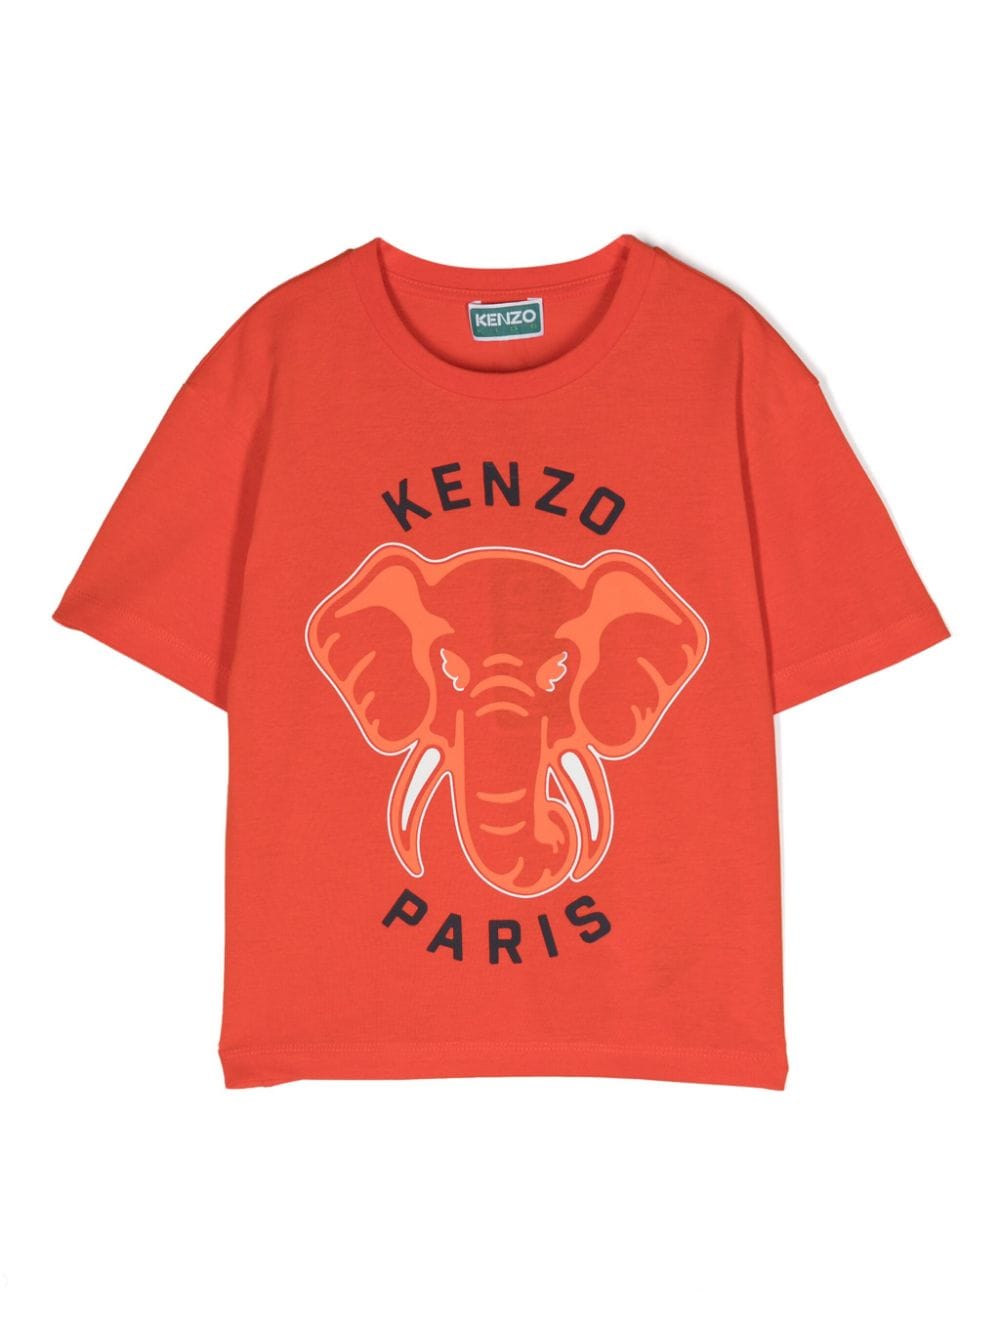 Kenzo Kids' Orange T-shirt For Boy With Elephant